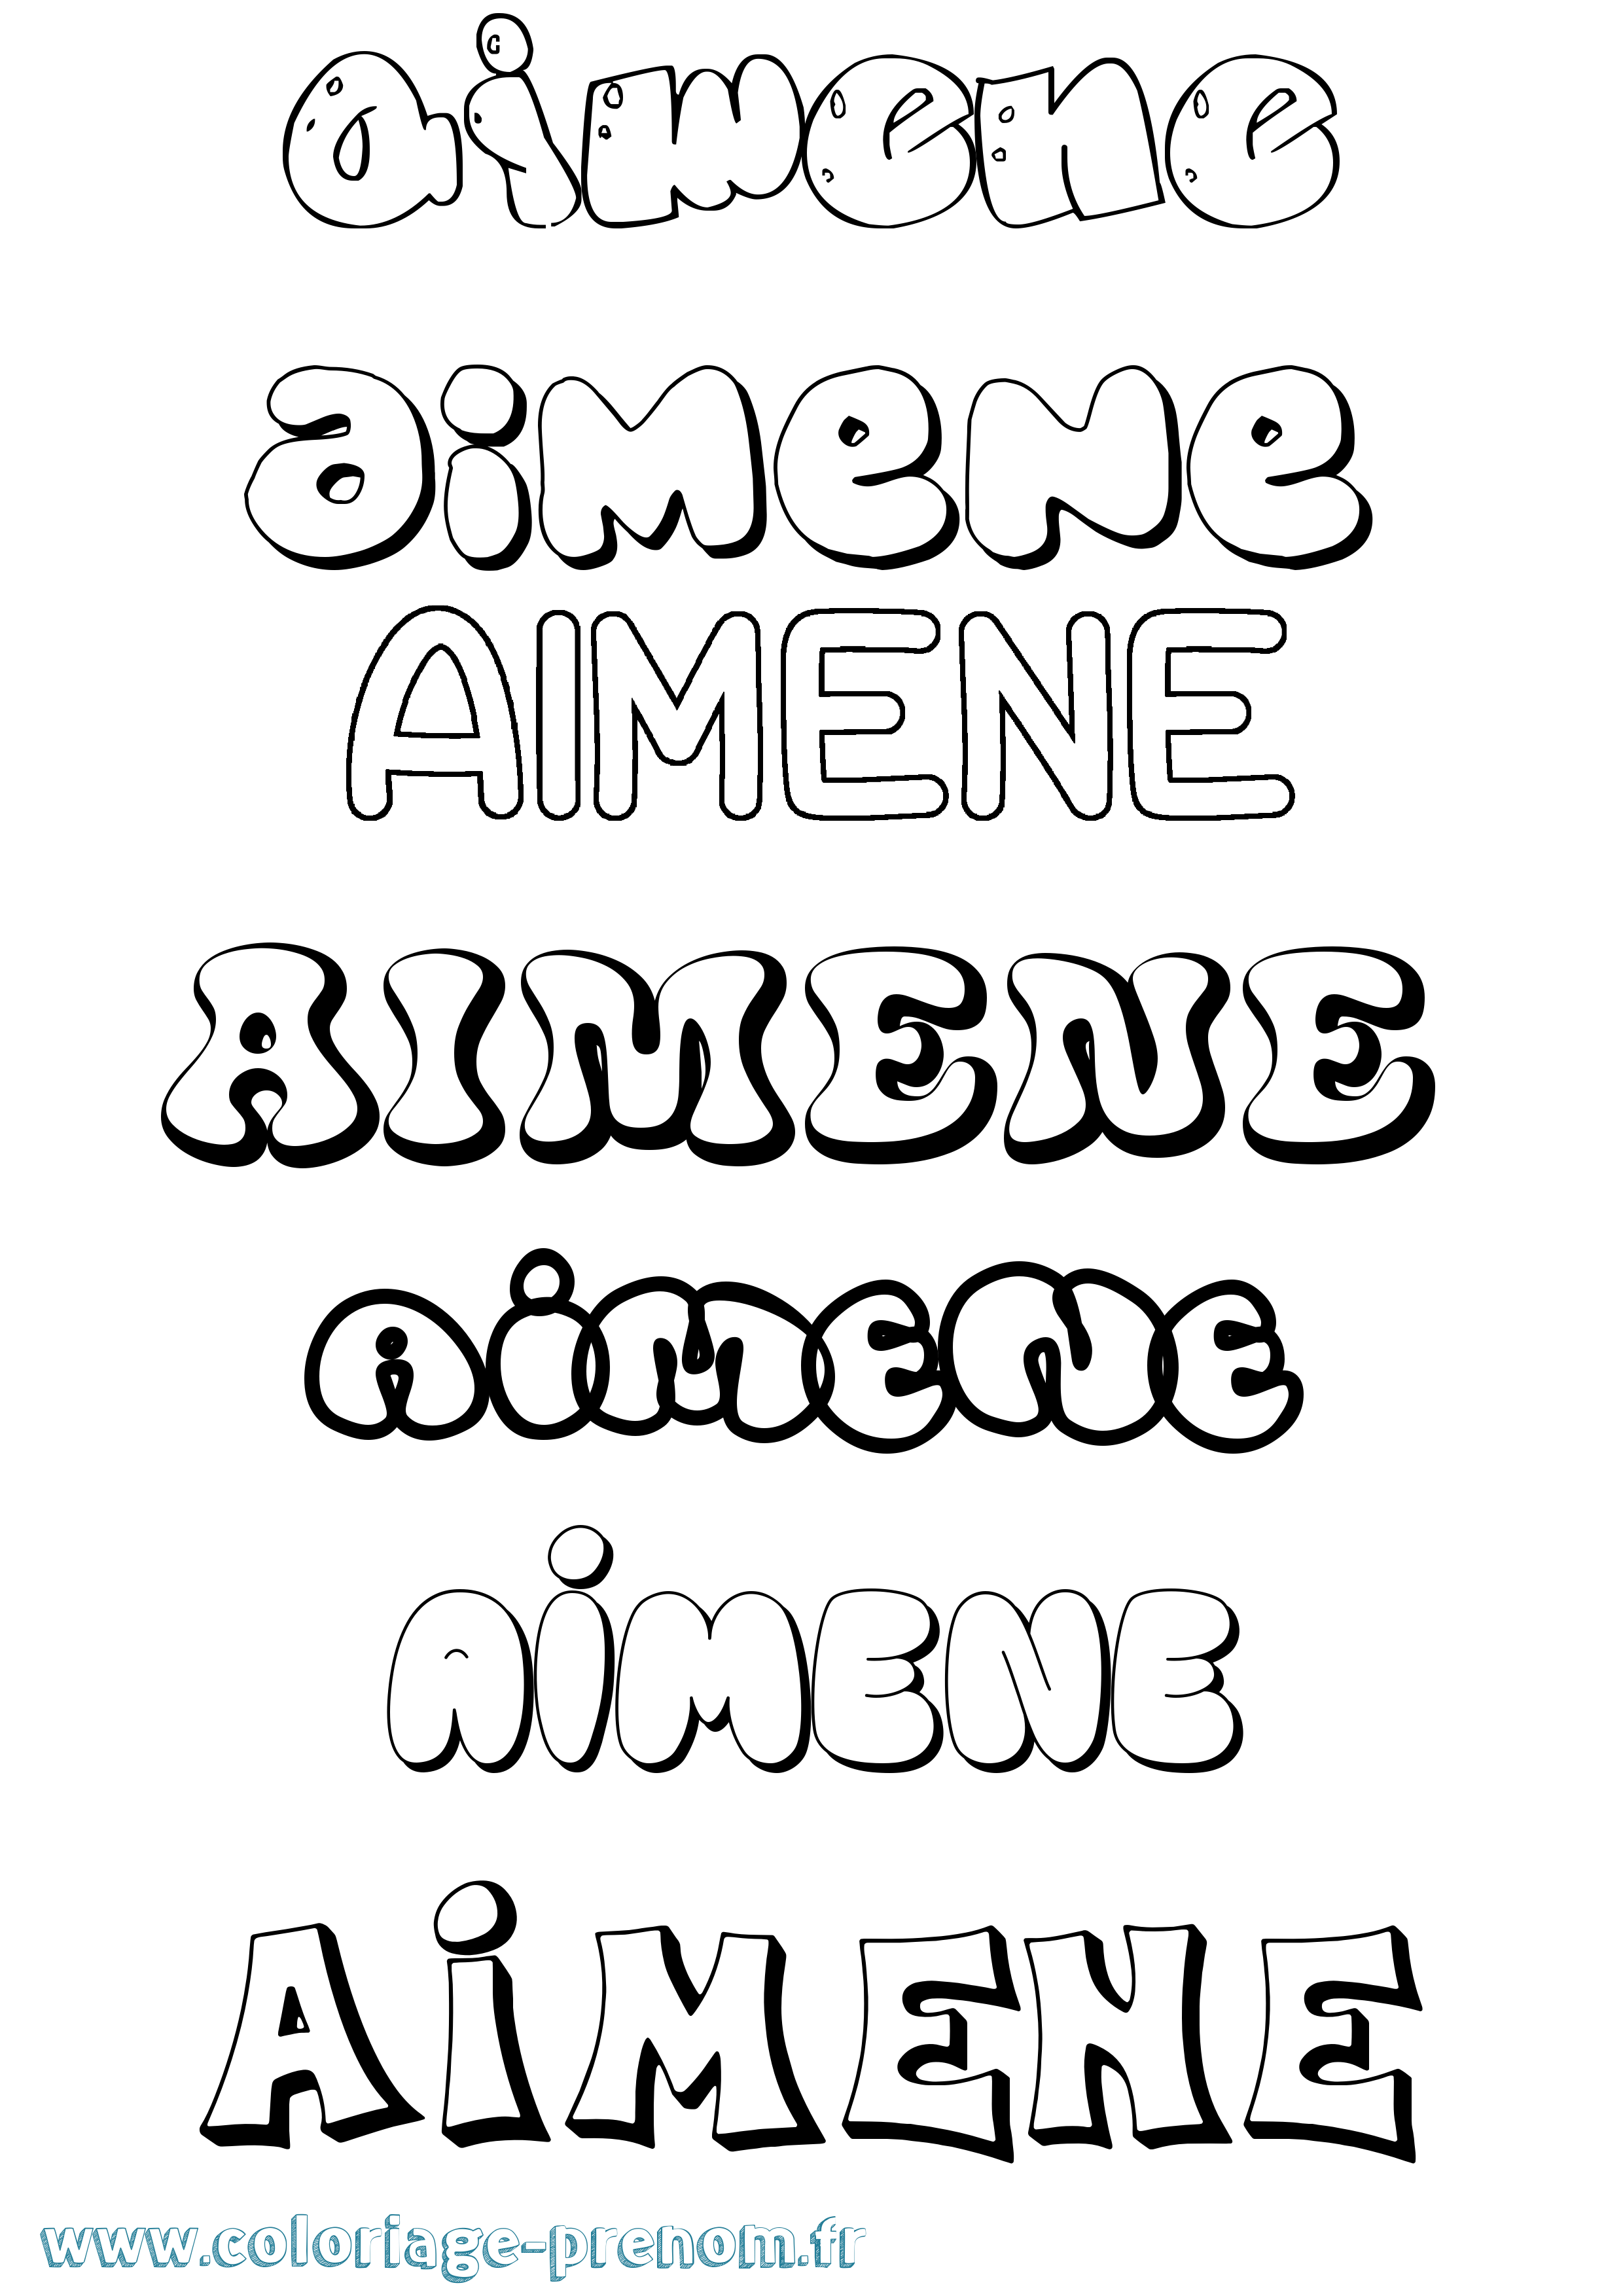 Coloriage prénom Aimene Bubble